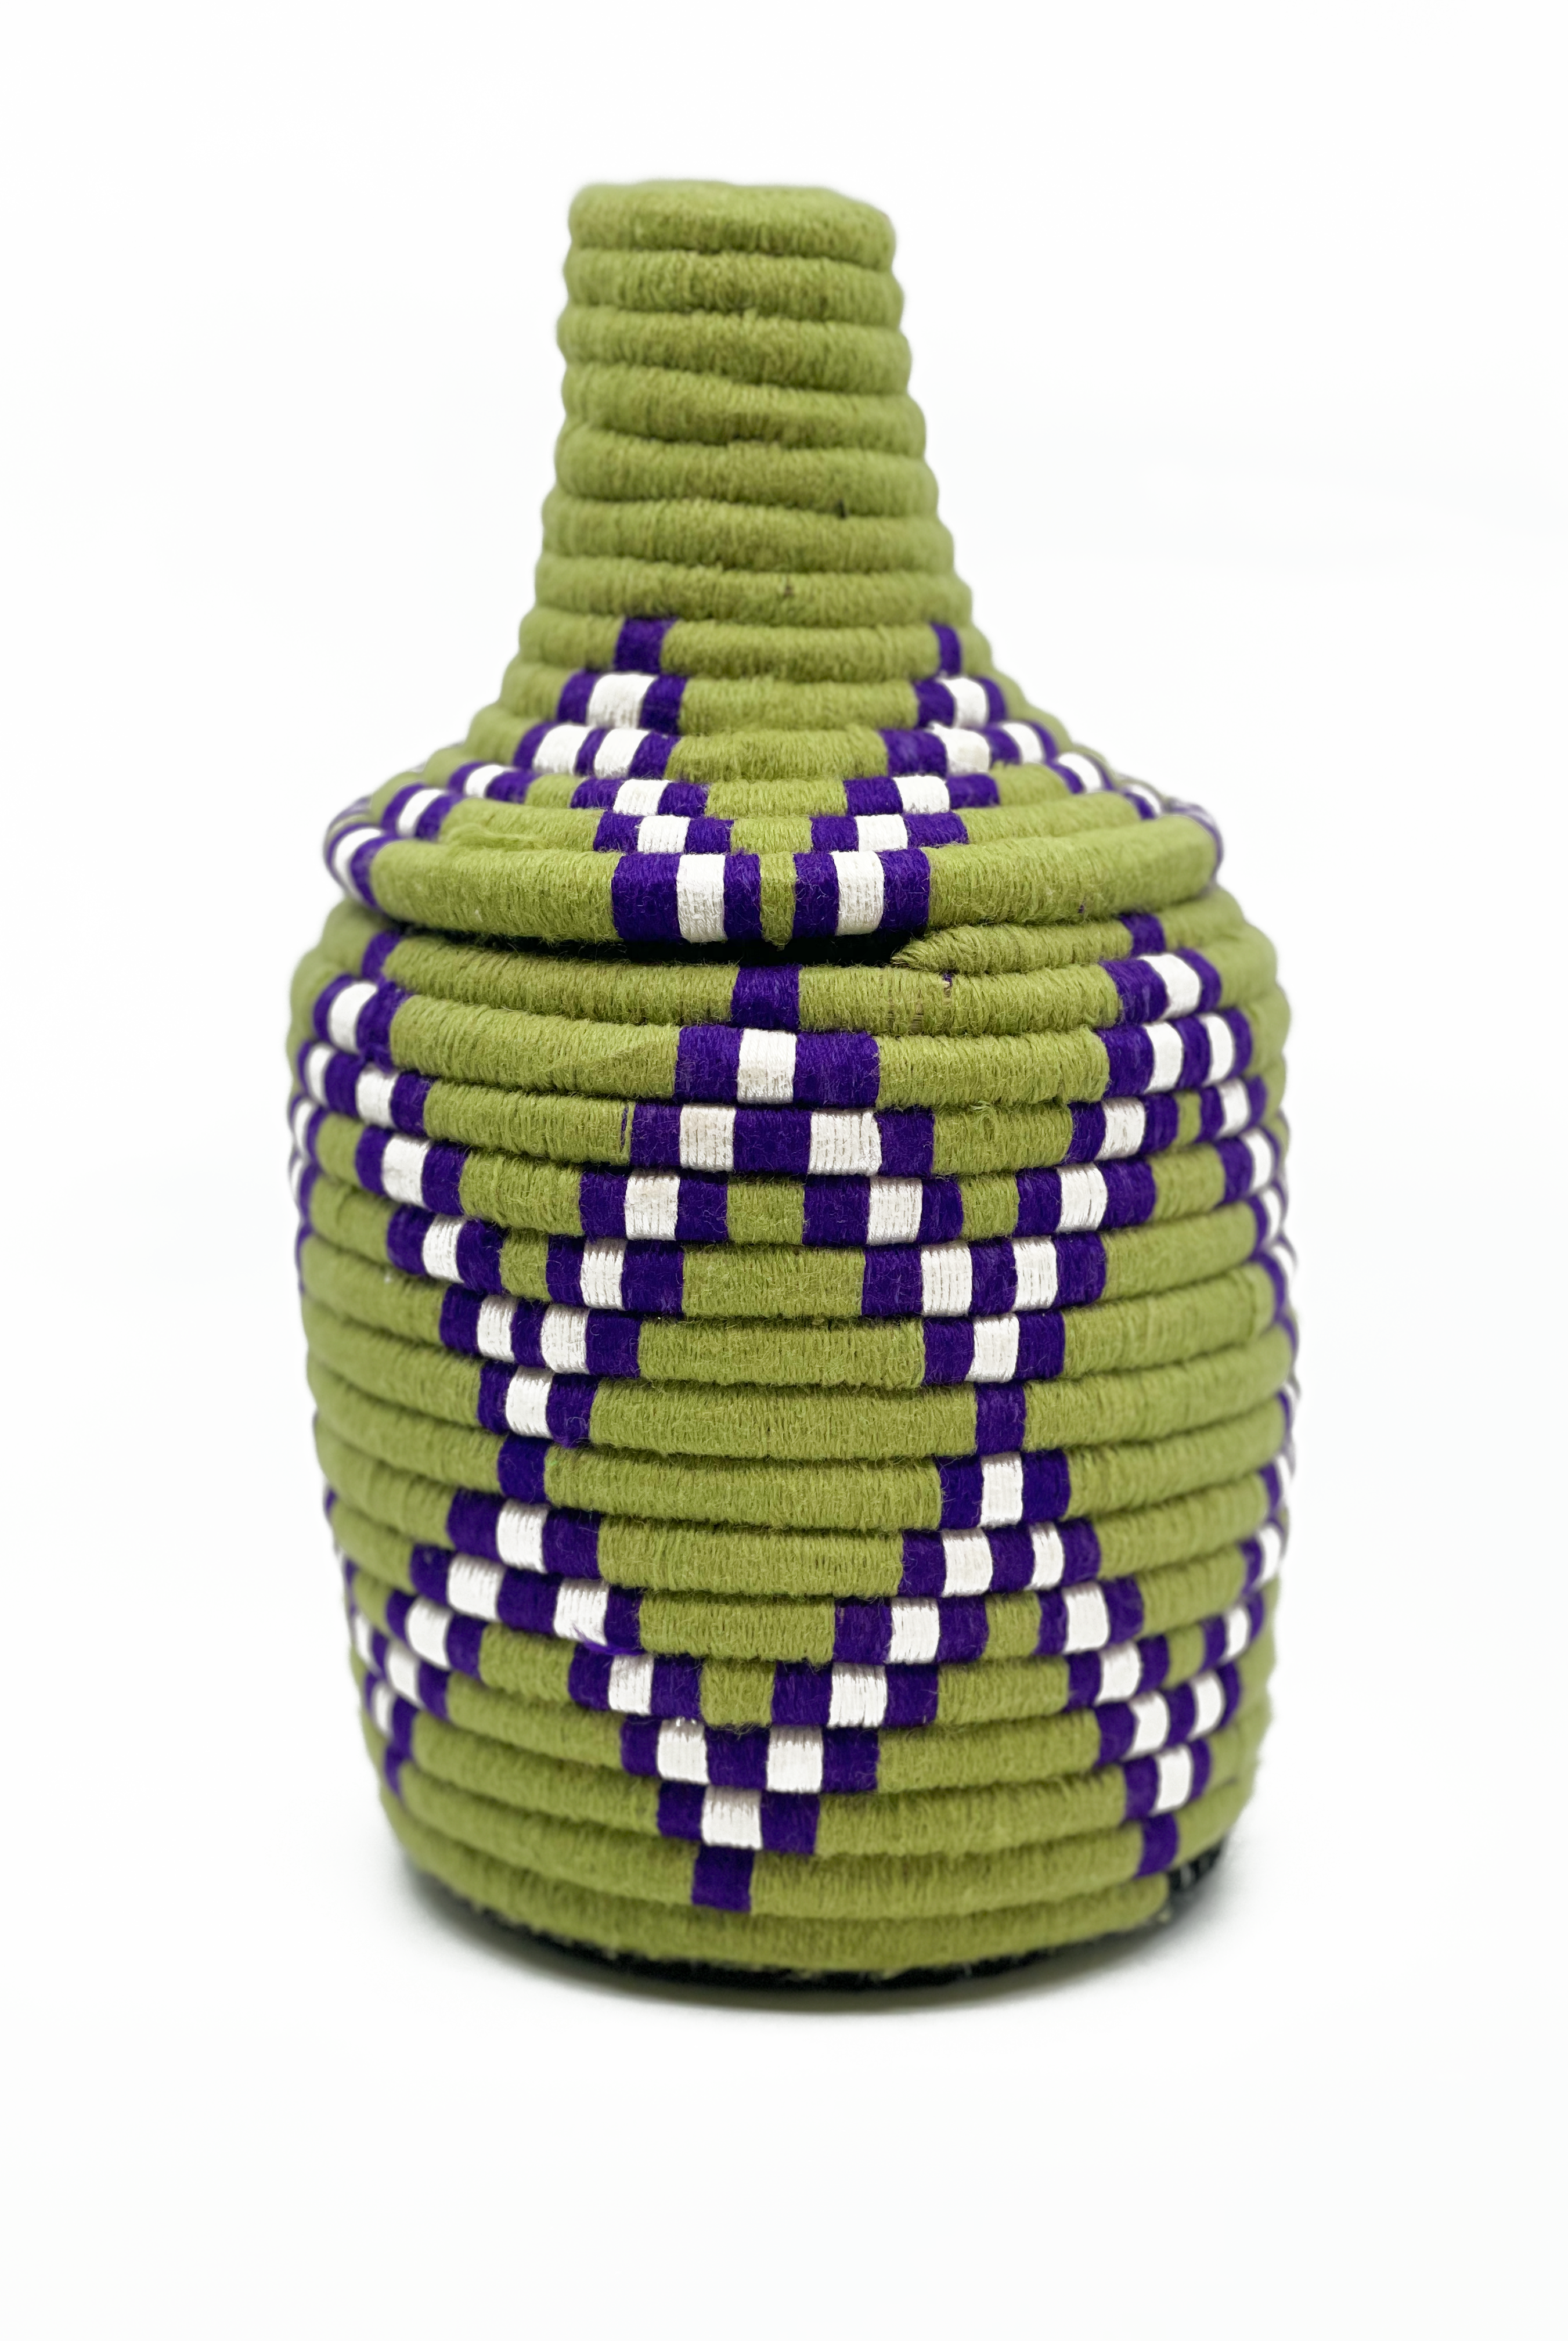 Berber basket no. 3